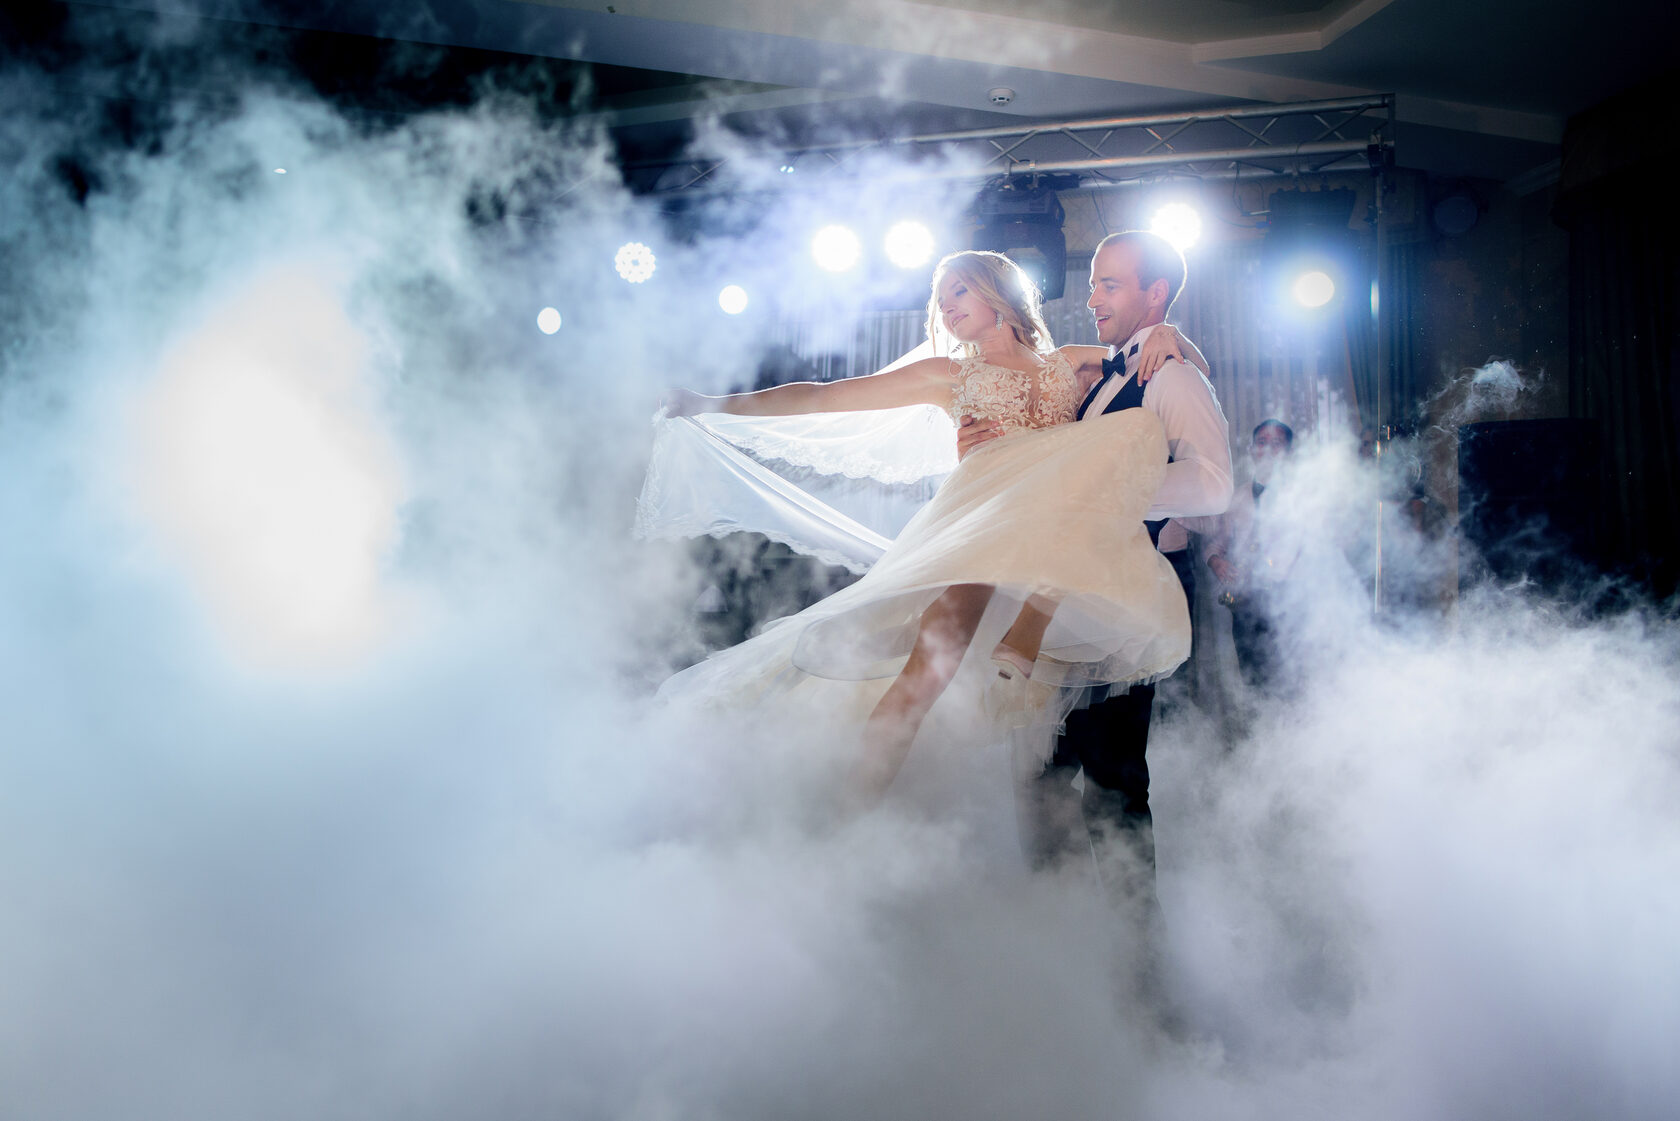 Тяжелый дым на свадьбу. Дым машина на свадьбе. Первый танец жениха и невесты тяжелый дым. Тяжелый туман на свадьбу. Песни для молодоженов на свадьбу первый танец